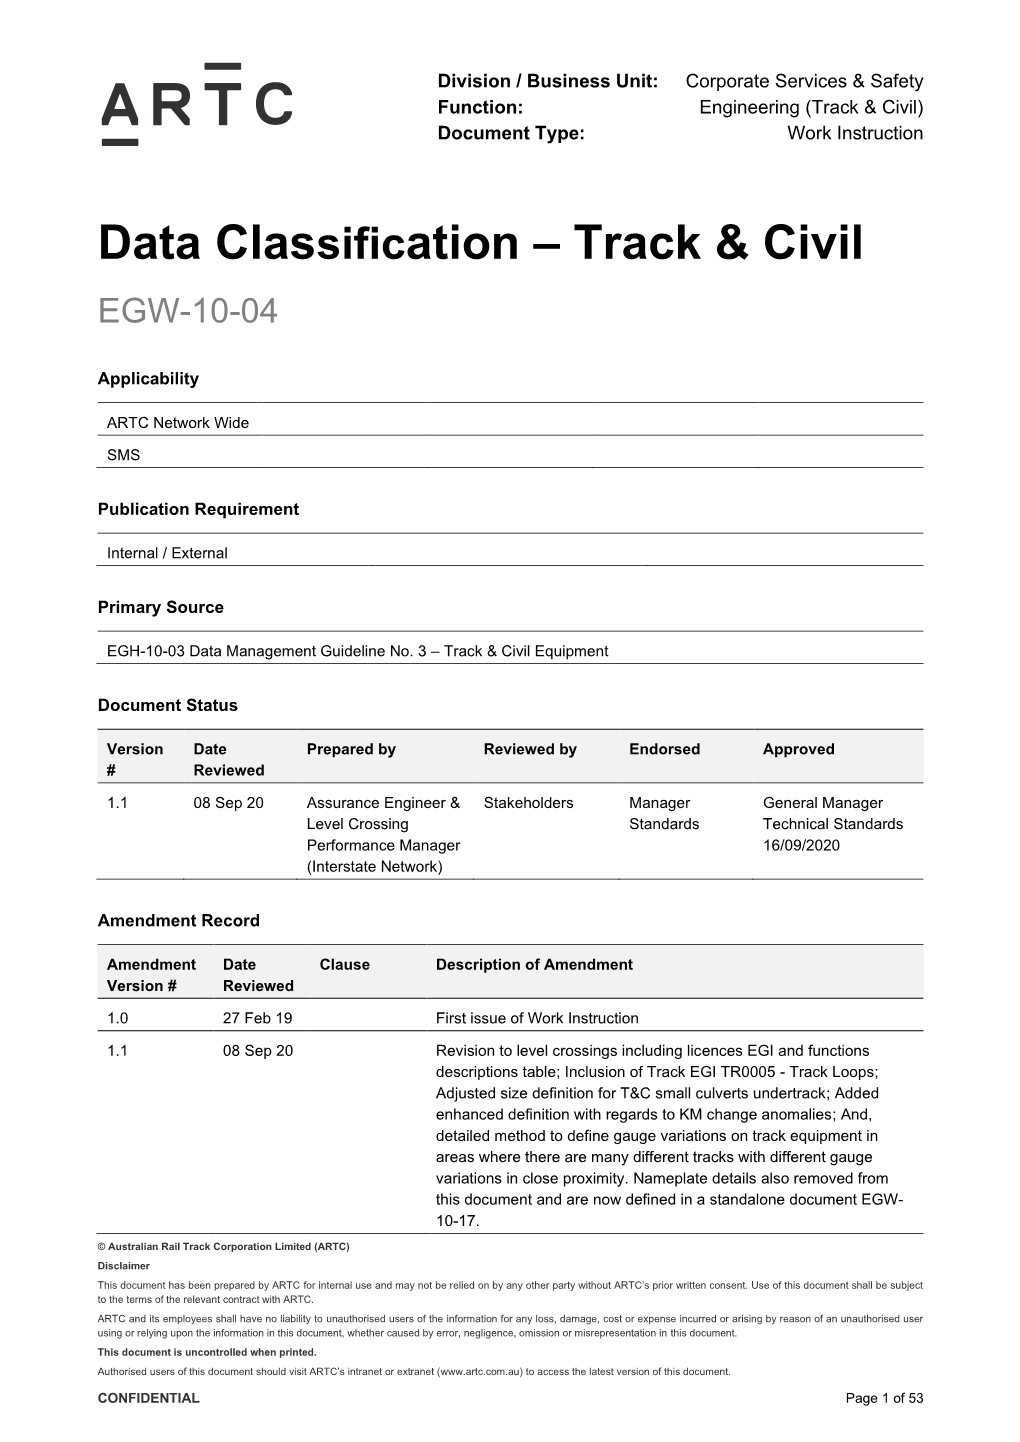 Data Classification – Track & Civil